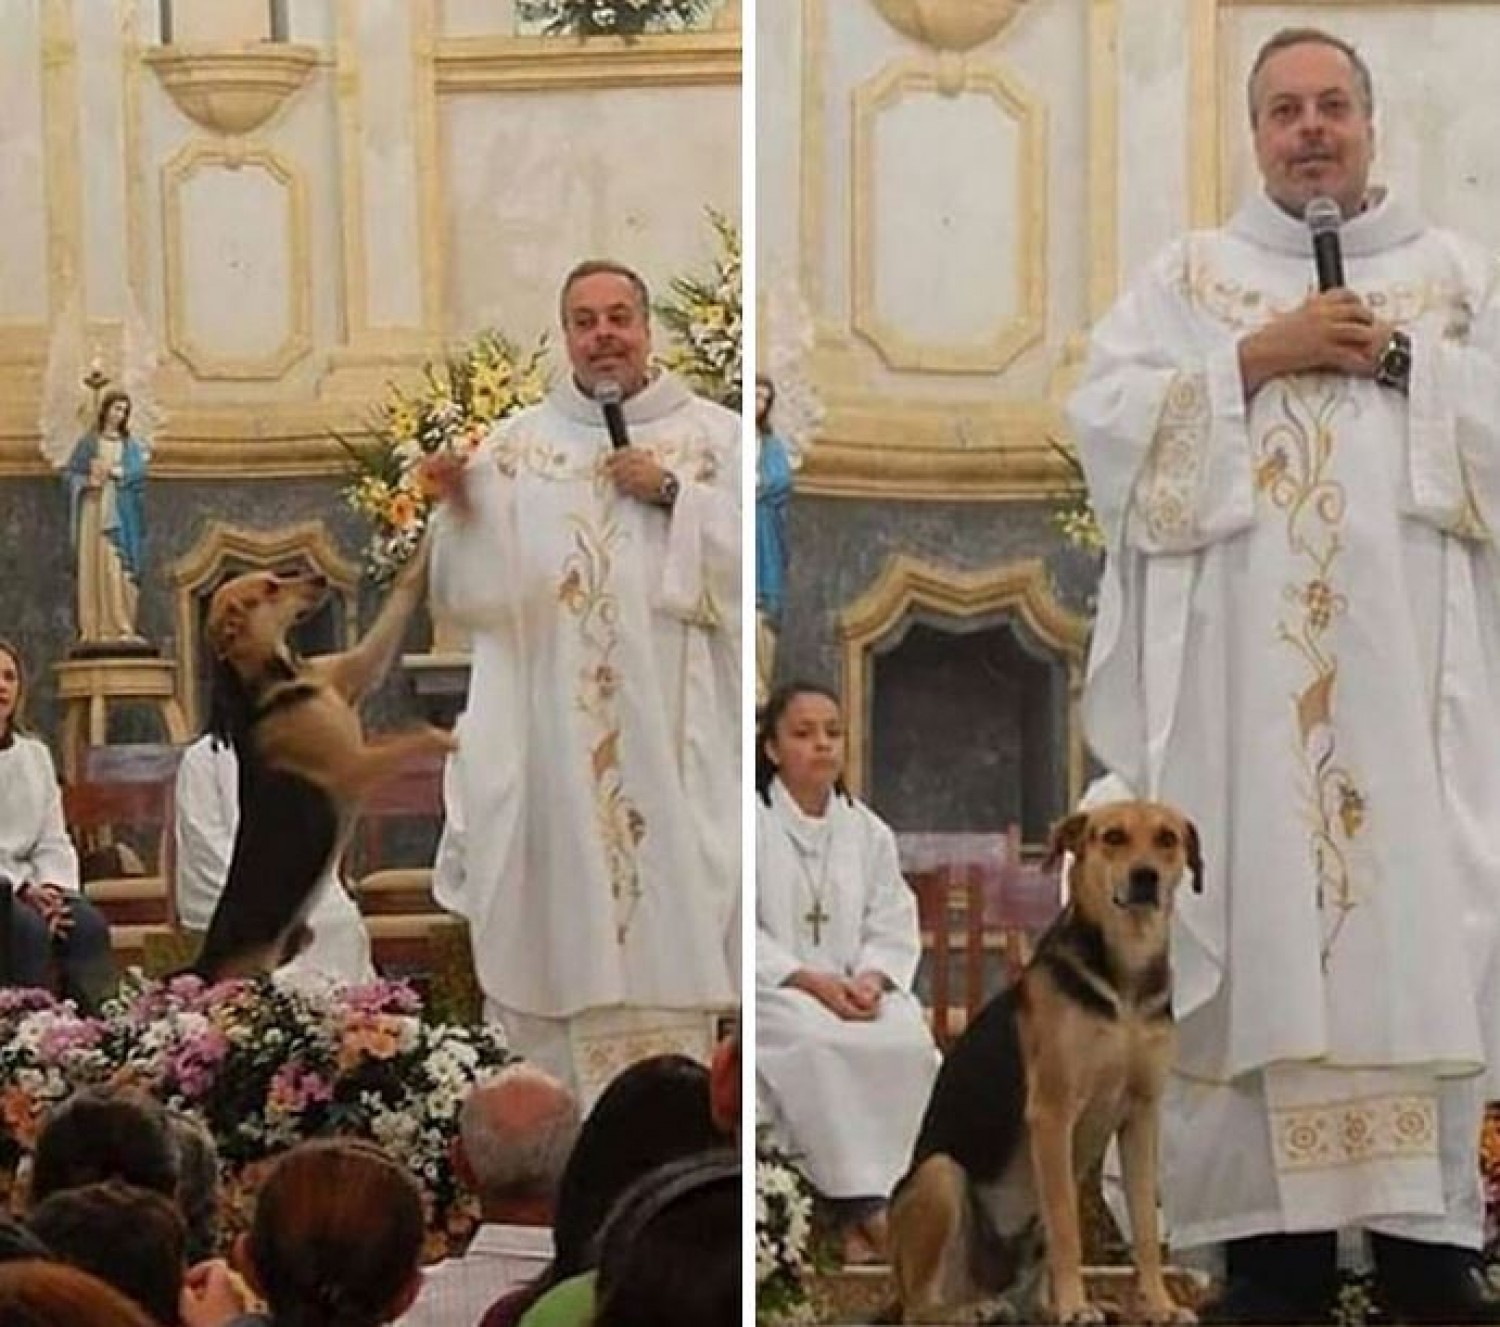 Ezért visz kutyát a misére a pap